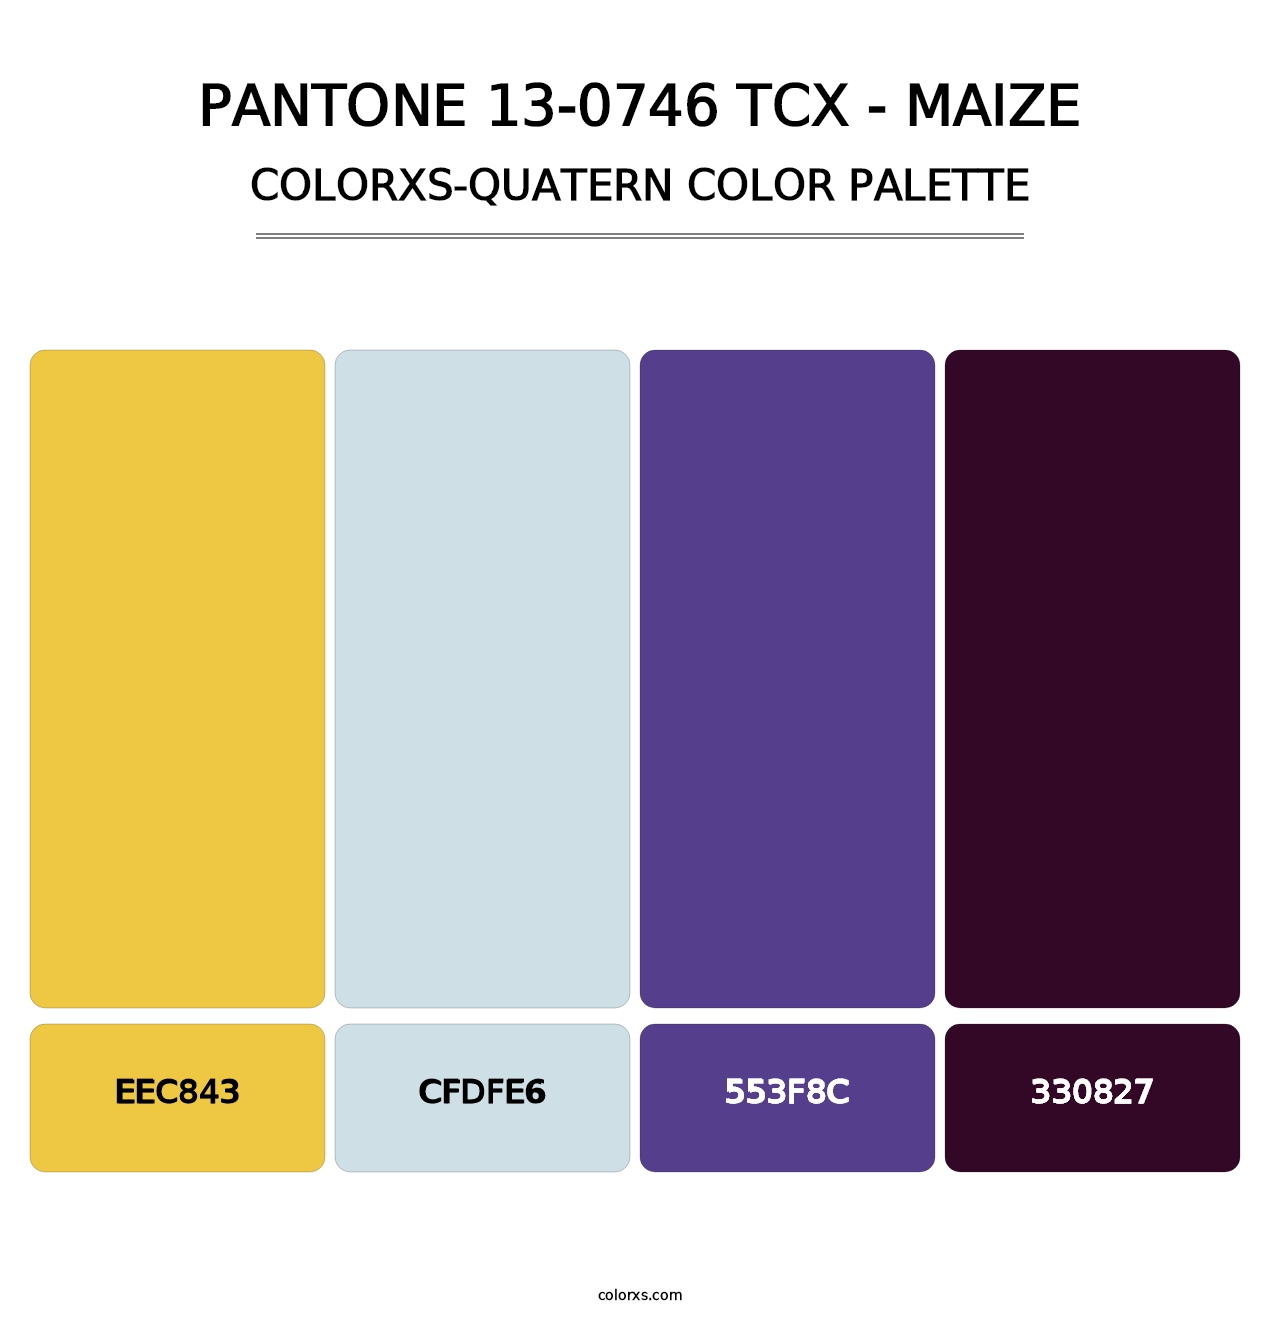 PANTONE 13-0746 TCX - Maize - Colorxs Quatern Palette